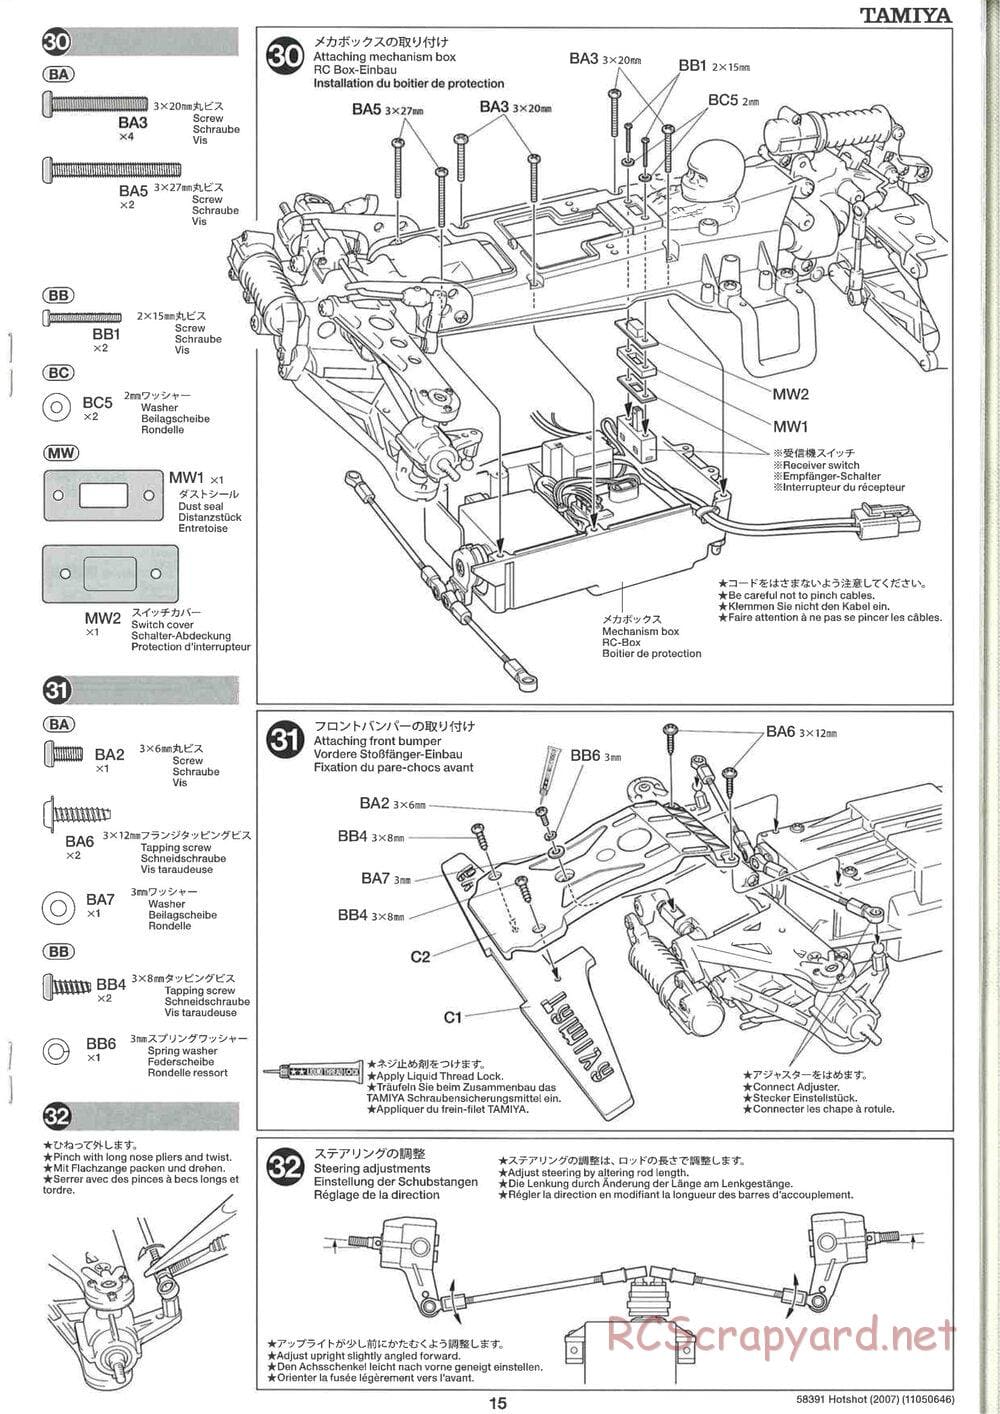 Tamiya - Hotshot - 2007 - HS Chassis - Manual - Page 15